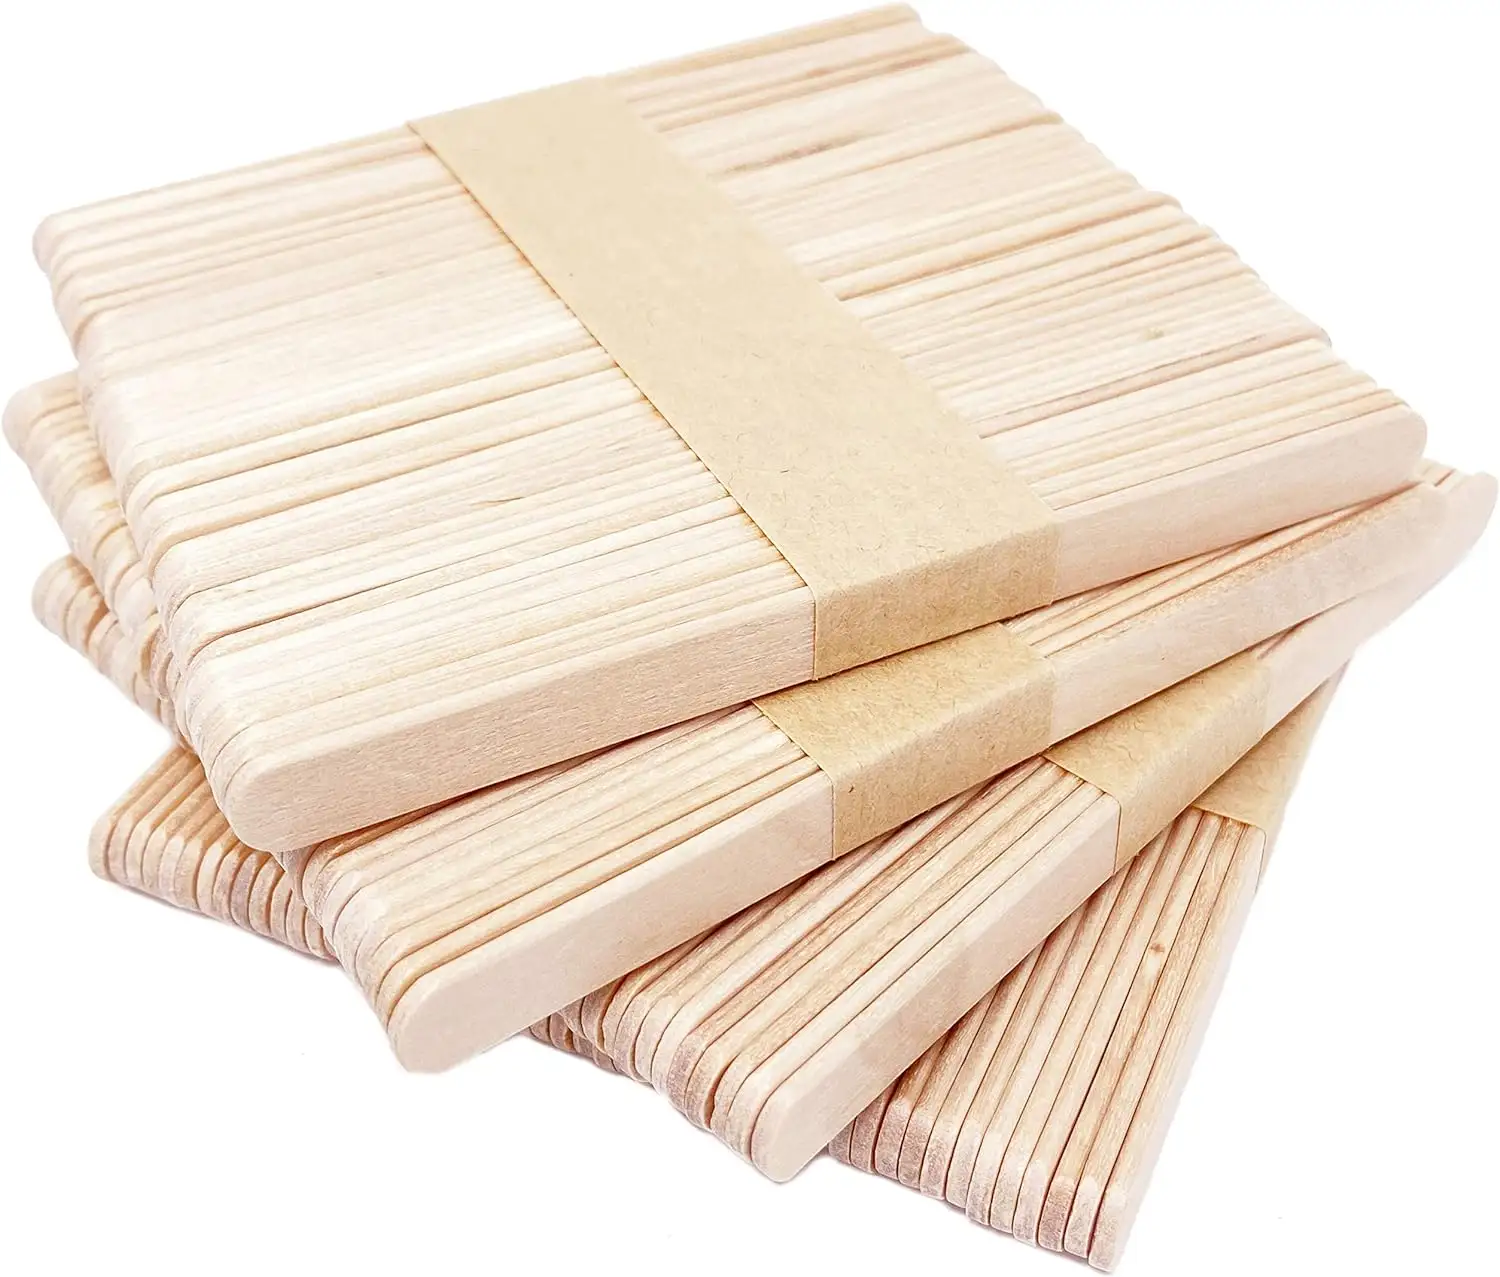 Palos de madera multifuncionales para manualidades, para manualidades, etiquetas de plantas